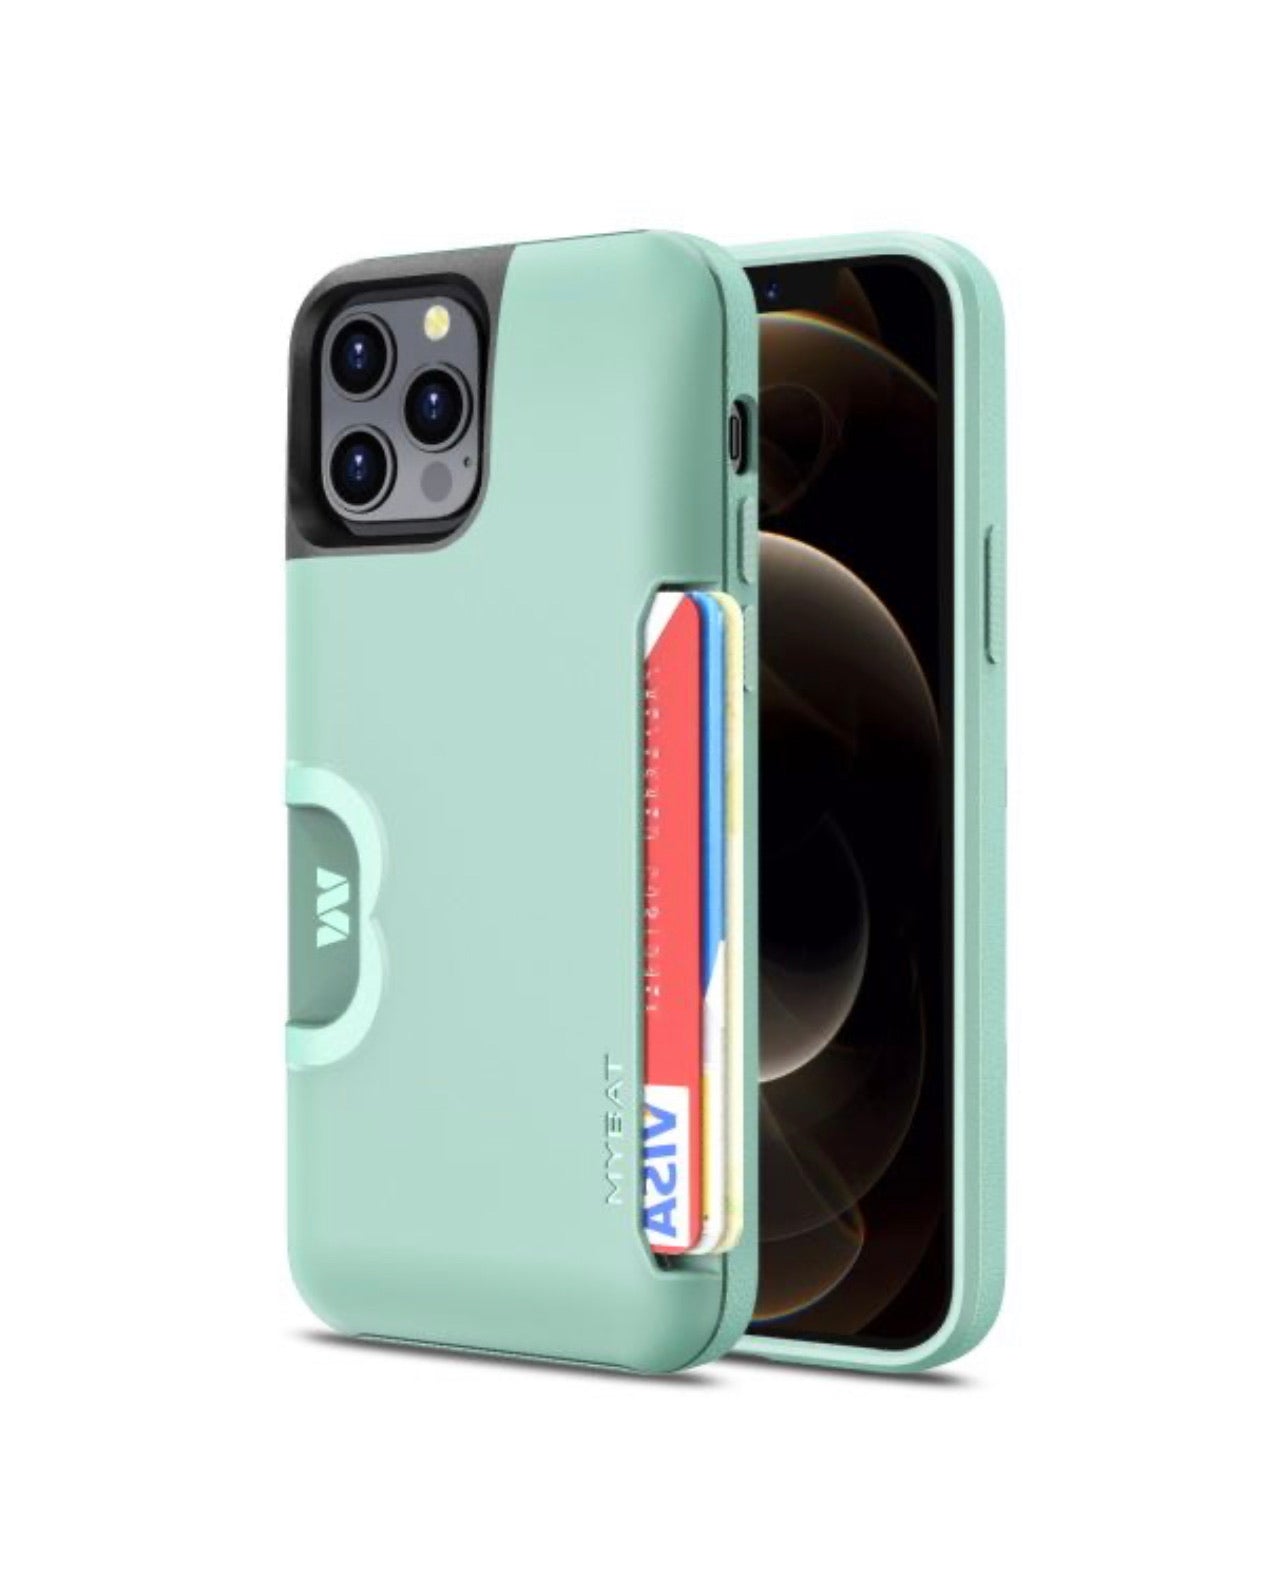 iPhone 12 Pro Max Premium Card Holder Case